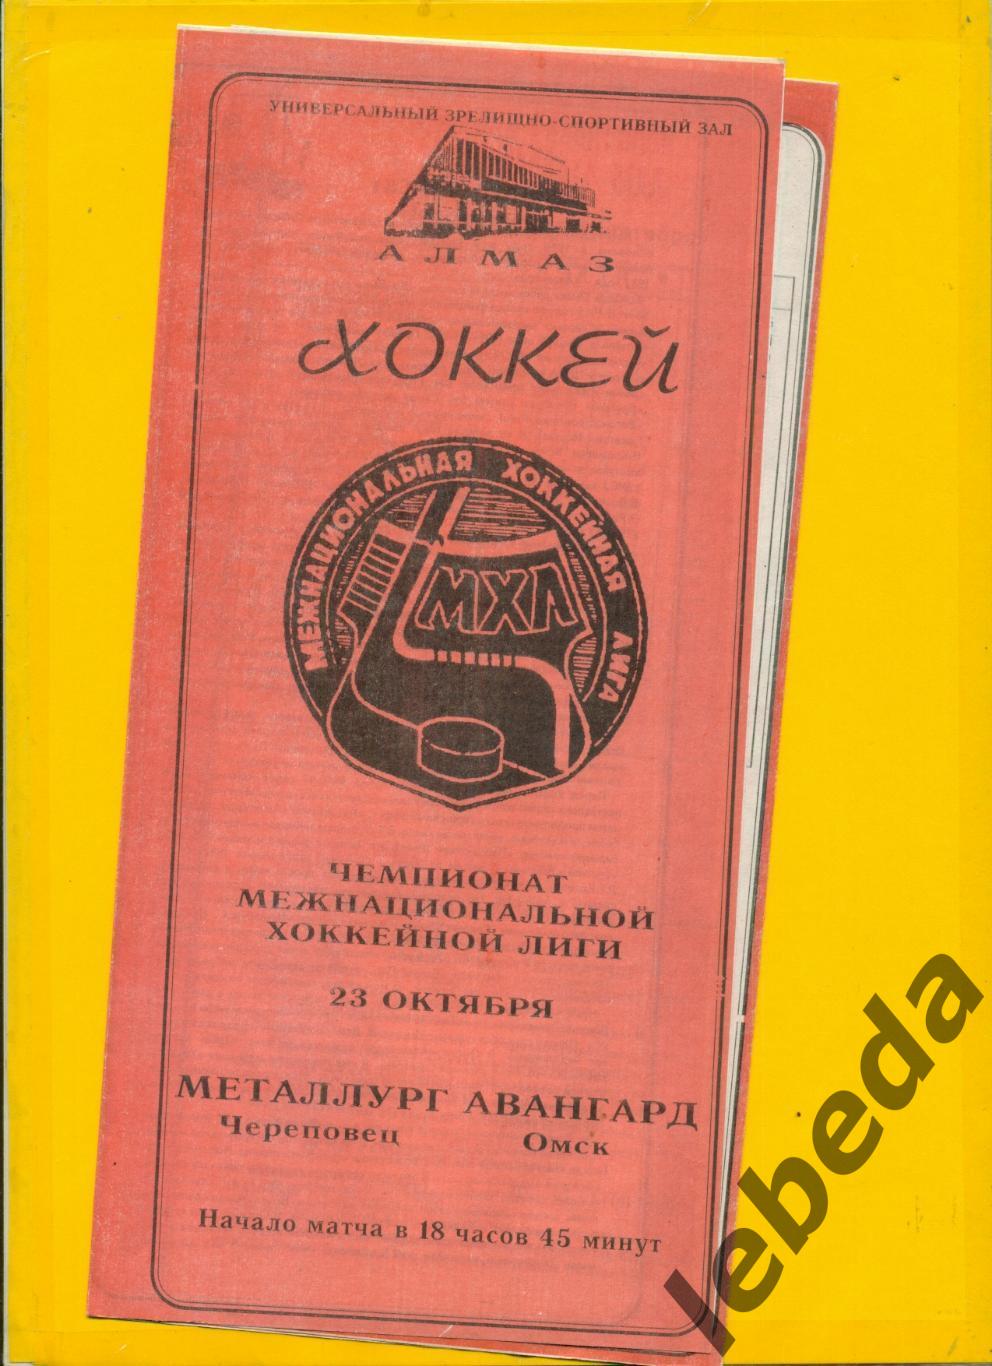 МеталлургЧереповец - Авангард Омск - 1993 / 1994 г. (23.10.93.)